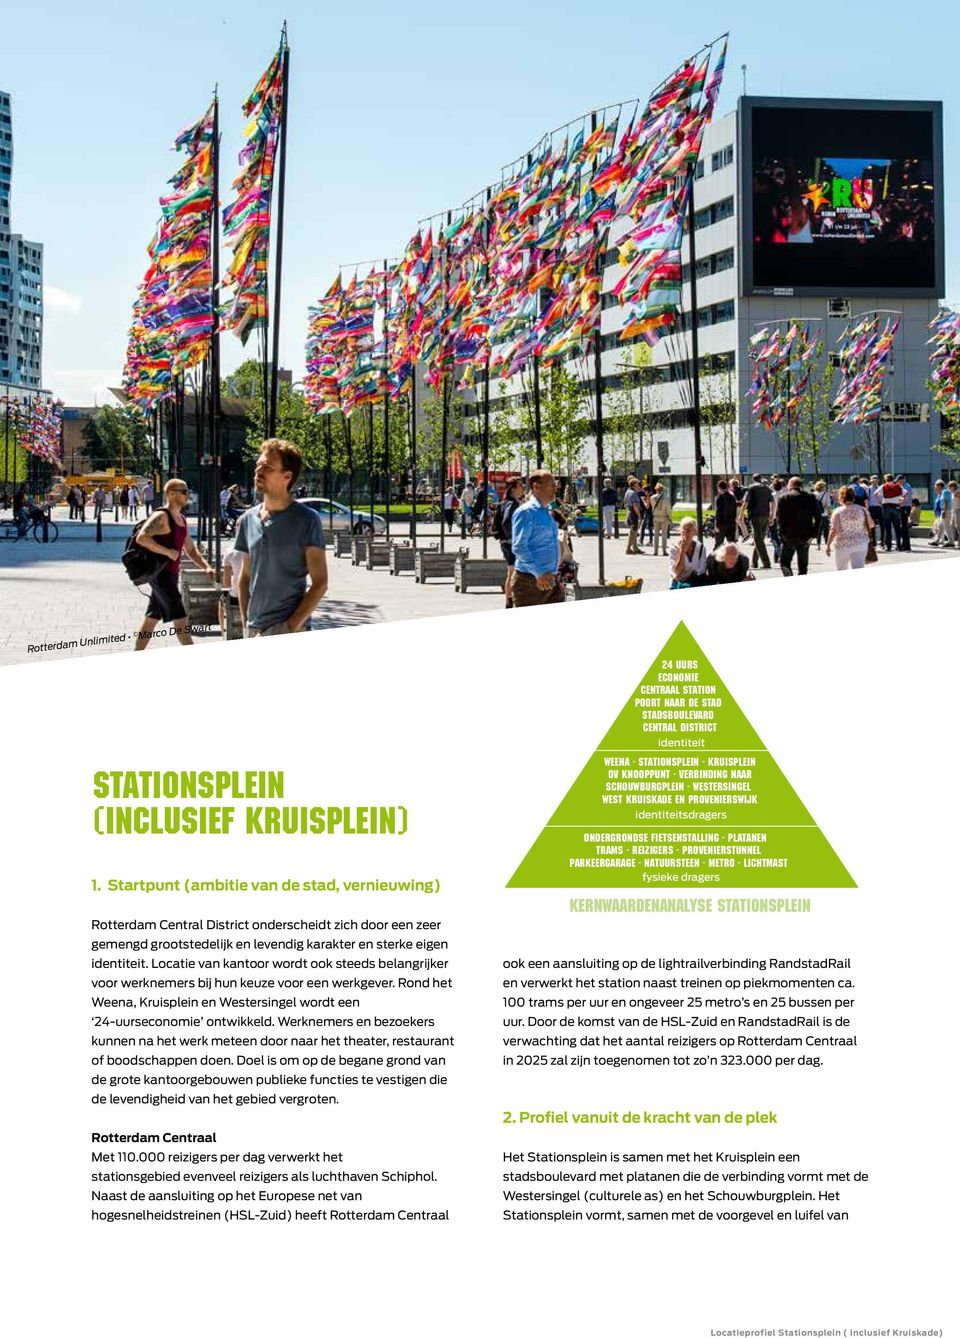 Locatie van kantoor wordt ook steeds belangrijker voor werknemers bij hun keuze voor een werkgever. Rond het Weena, Kruisplein en Westersingel wordt een 24-uurseconomie ontwikkeld.